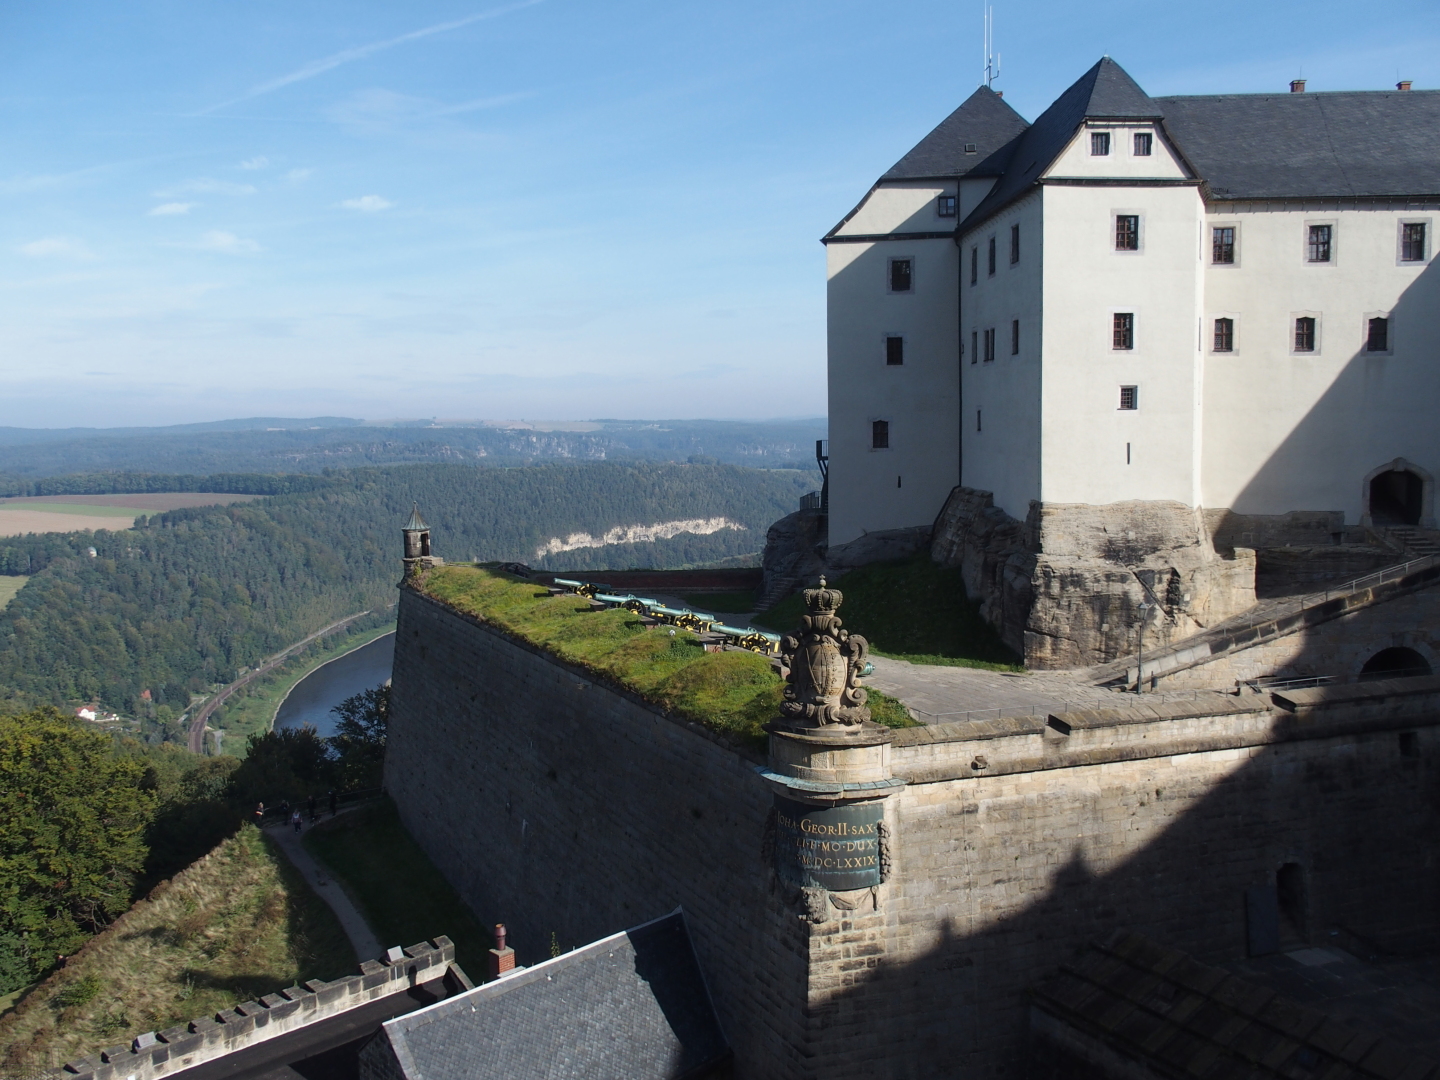 Blick auf eine der Verteidigungsstellungen der Festung Königstein.